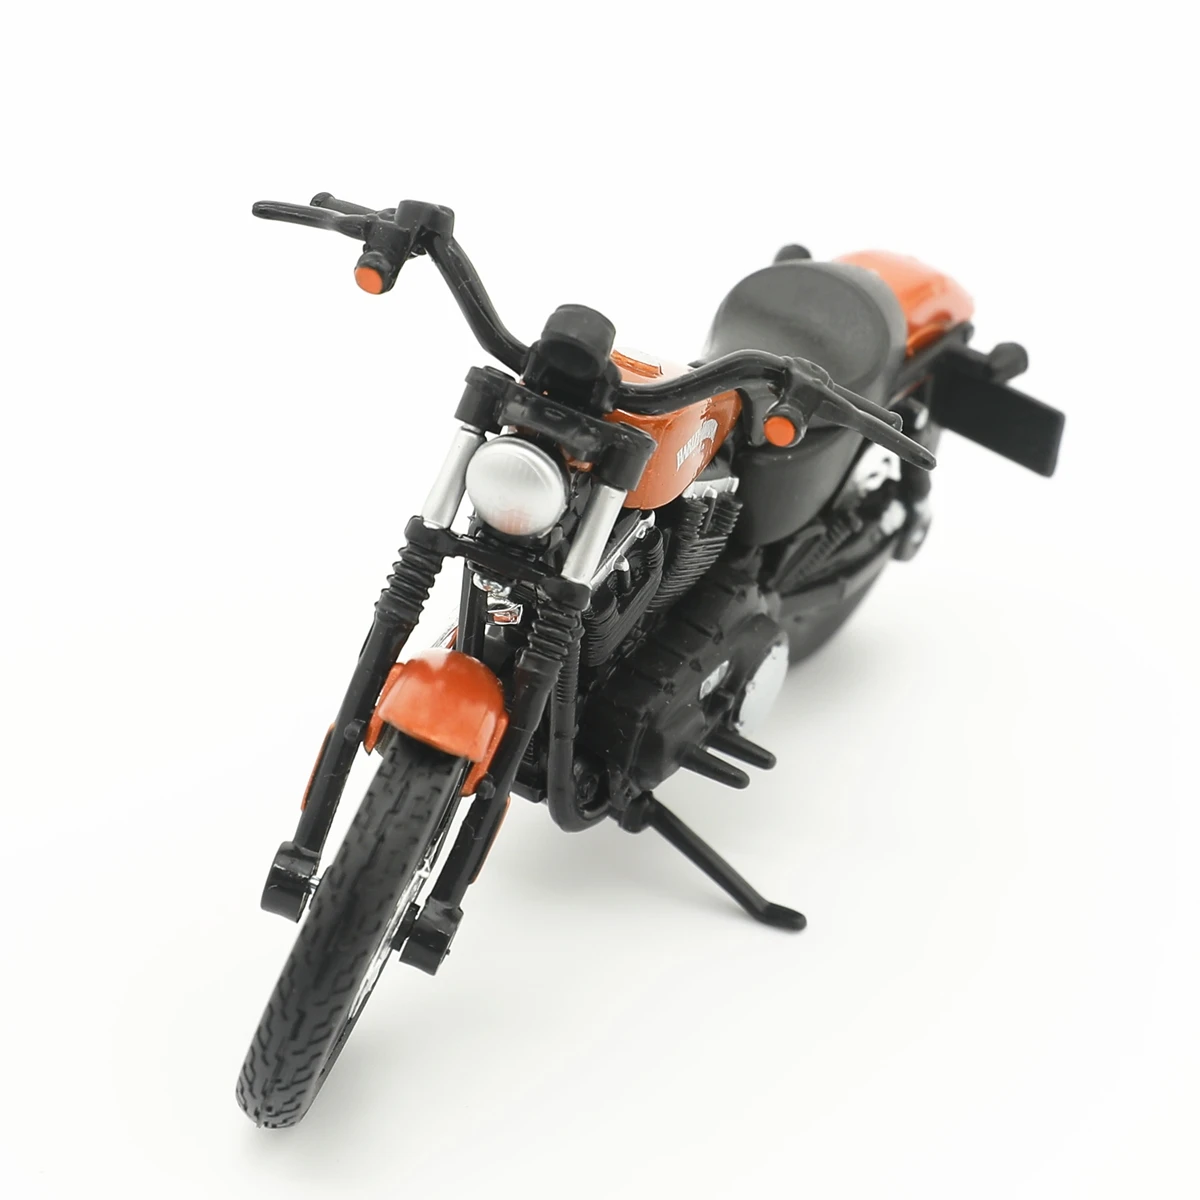 

1:18 2015 Harley-Davidson Sportster железо 883 Сплав мотоцикл литый под давлением модель велосипеда автомобиля коллекция игрушек мини мотоцикл подарок